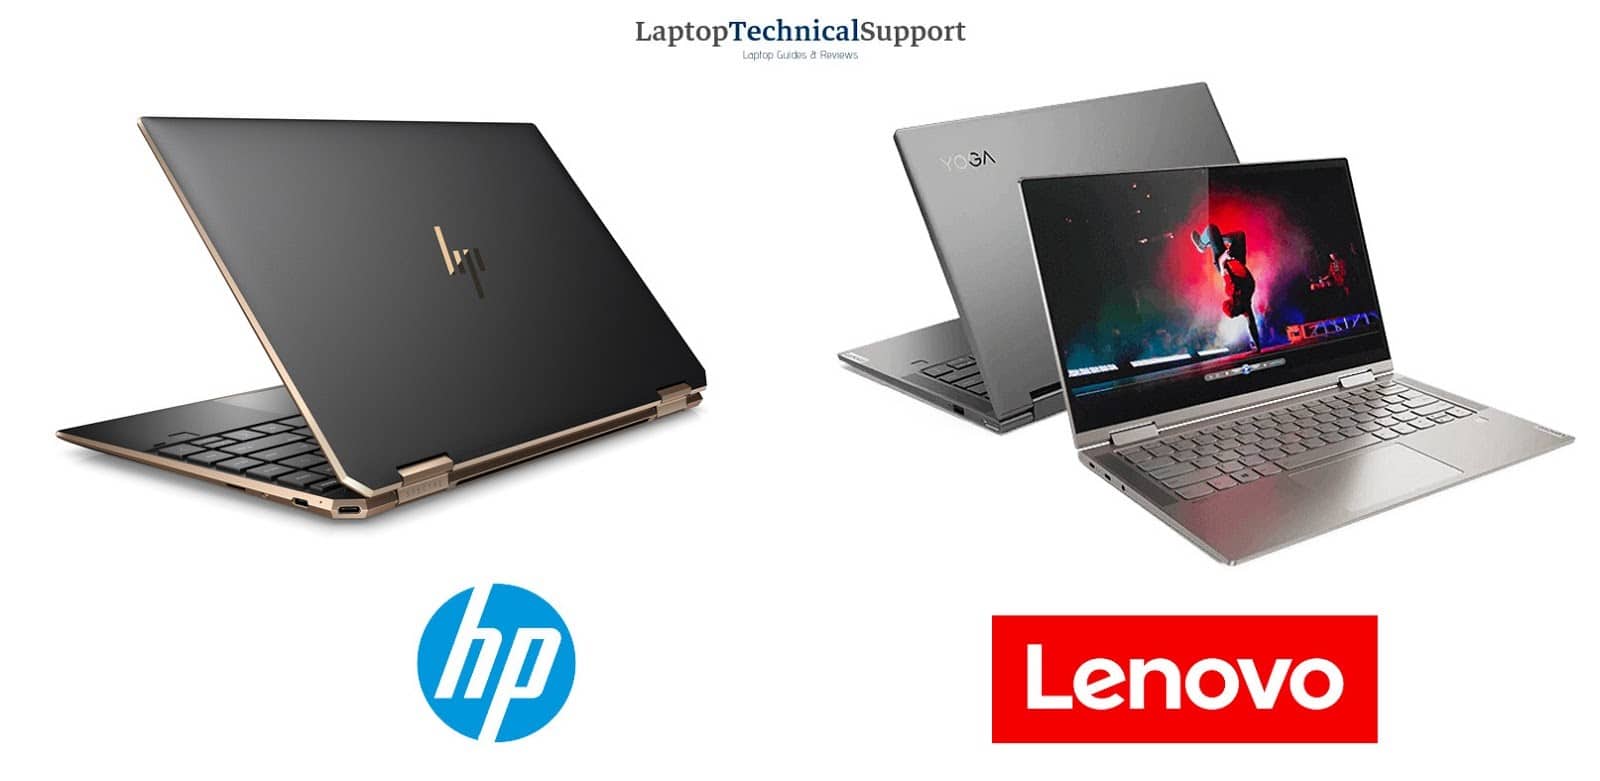 Lenovo Vs HP Laptops - 2020 Comparison LaptopTechnicalSupport.net